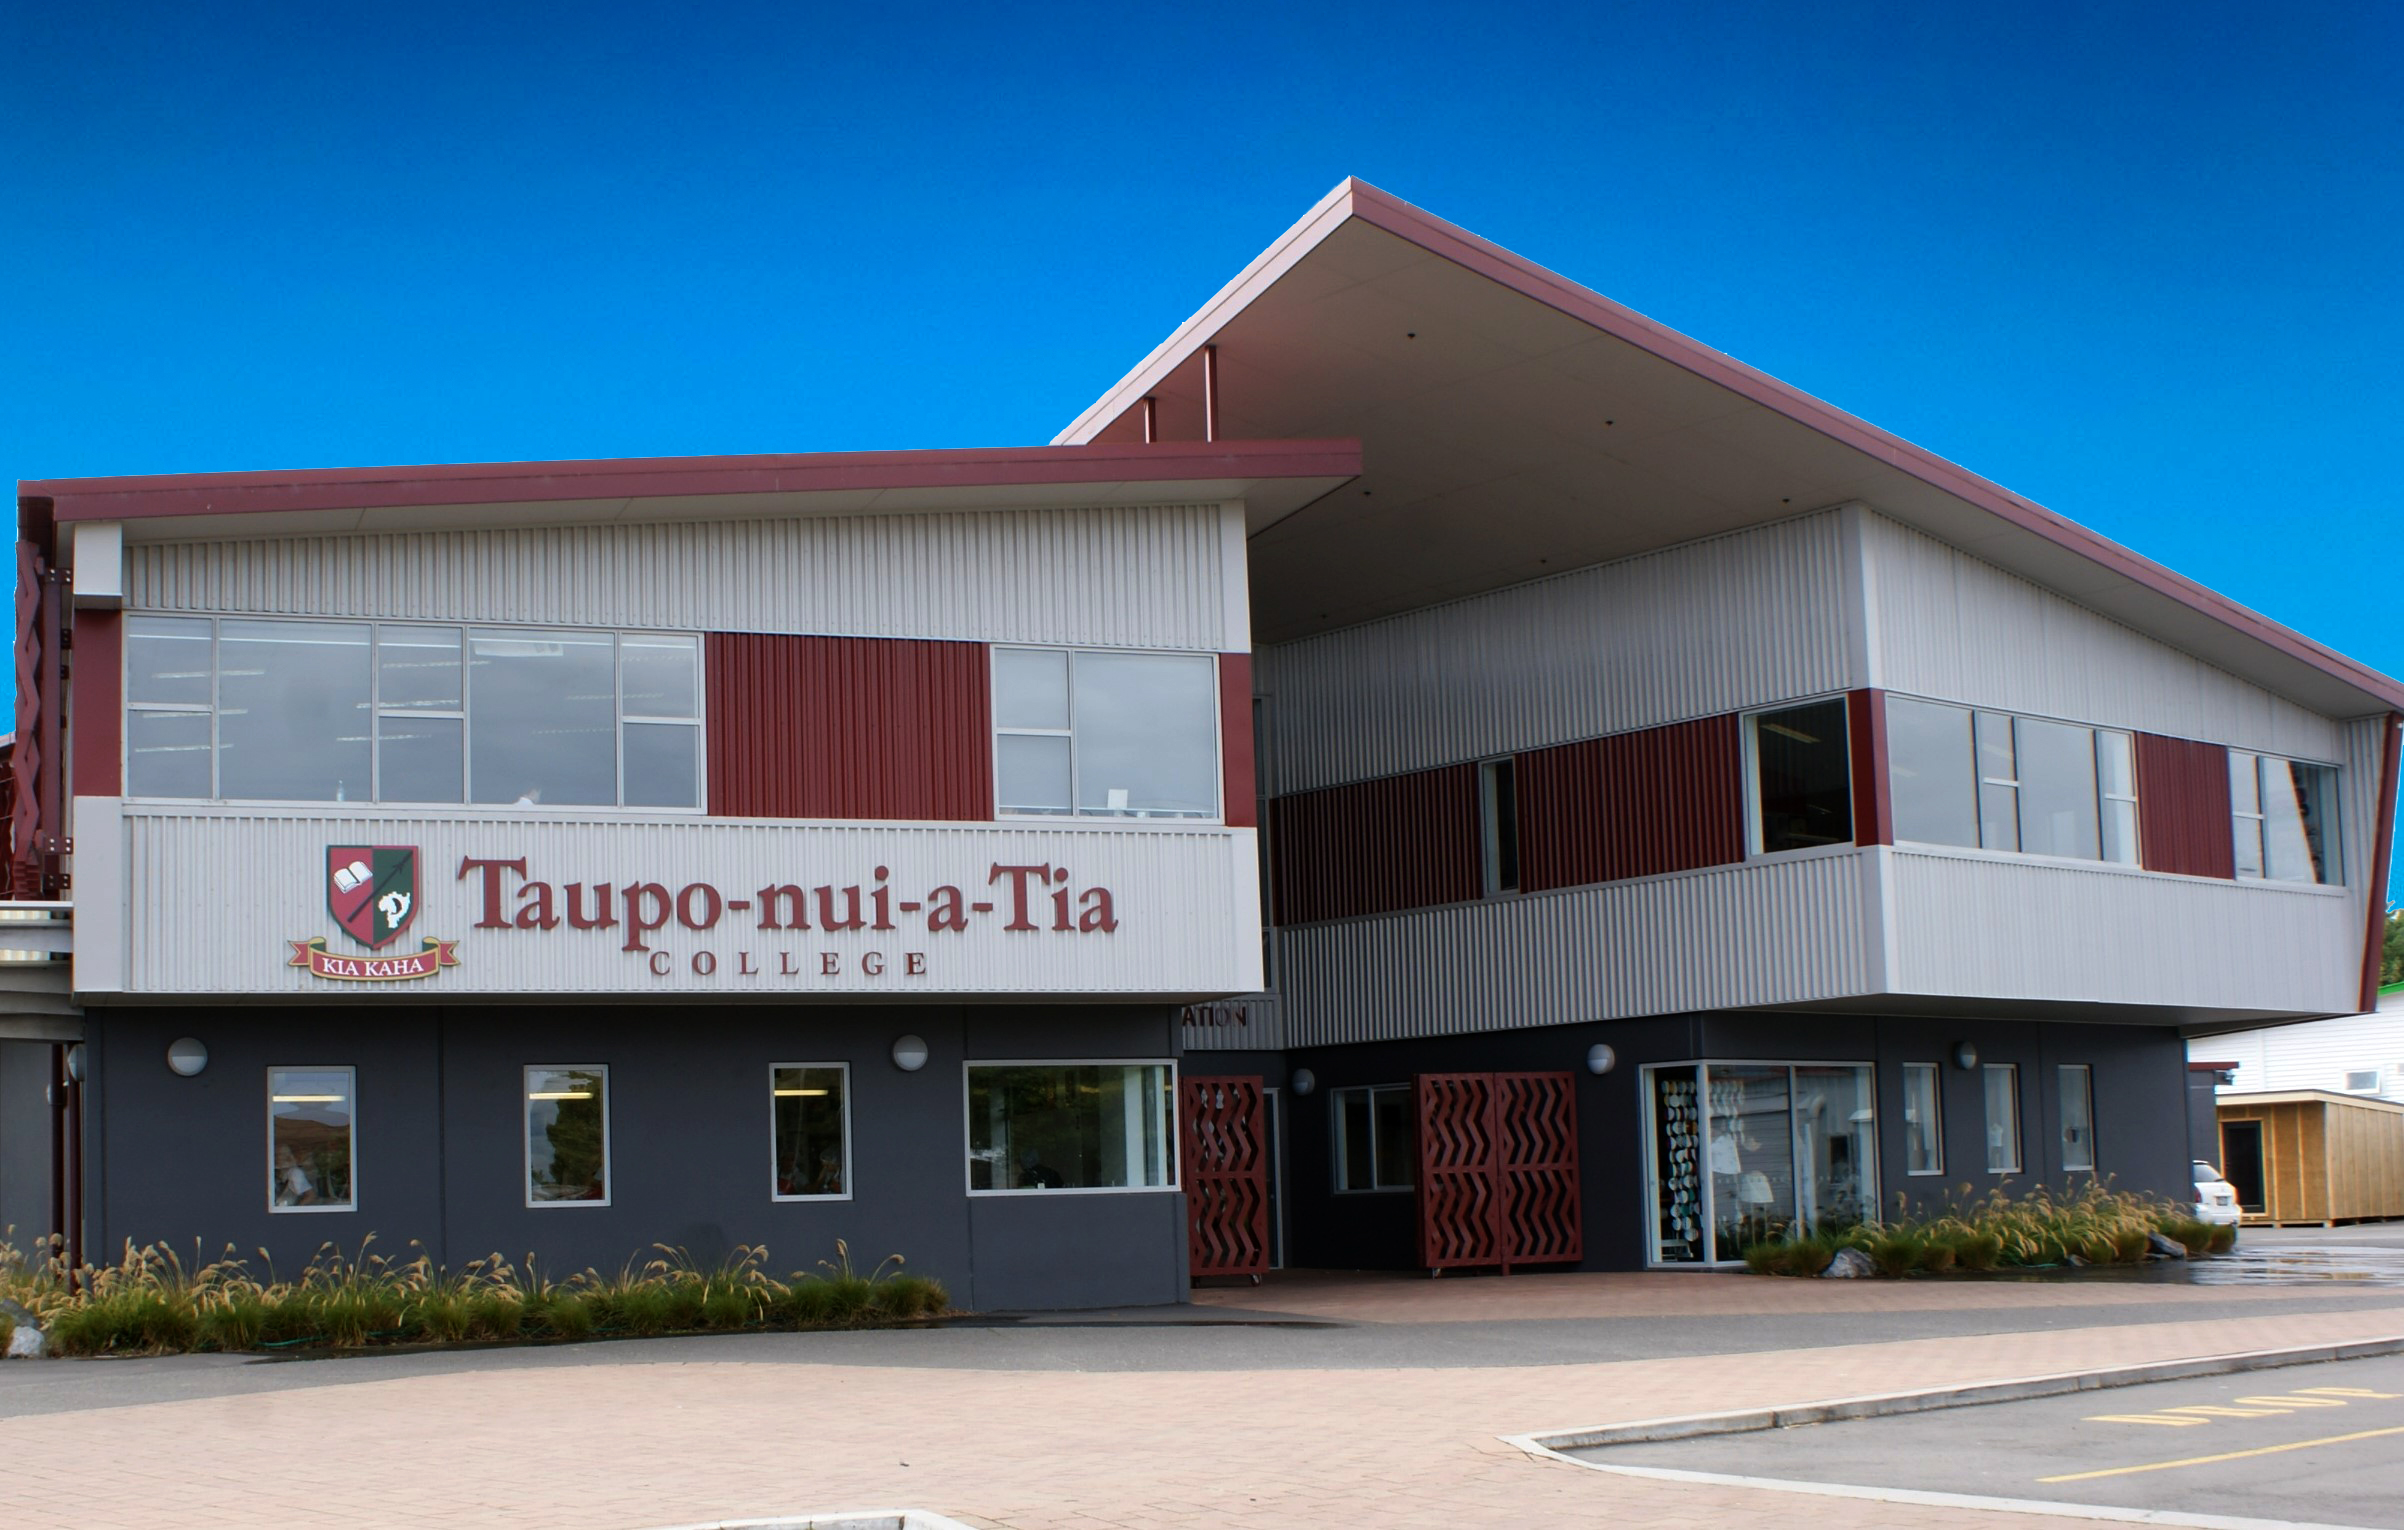 Taupo-nui-a-Tia College